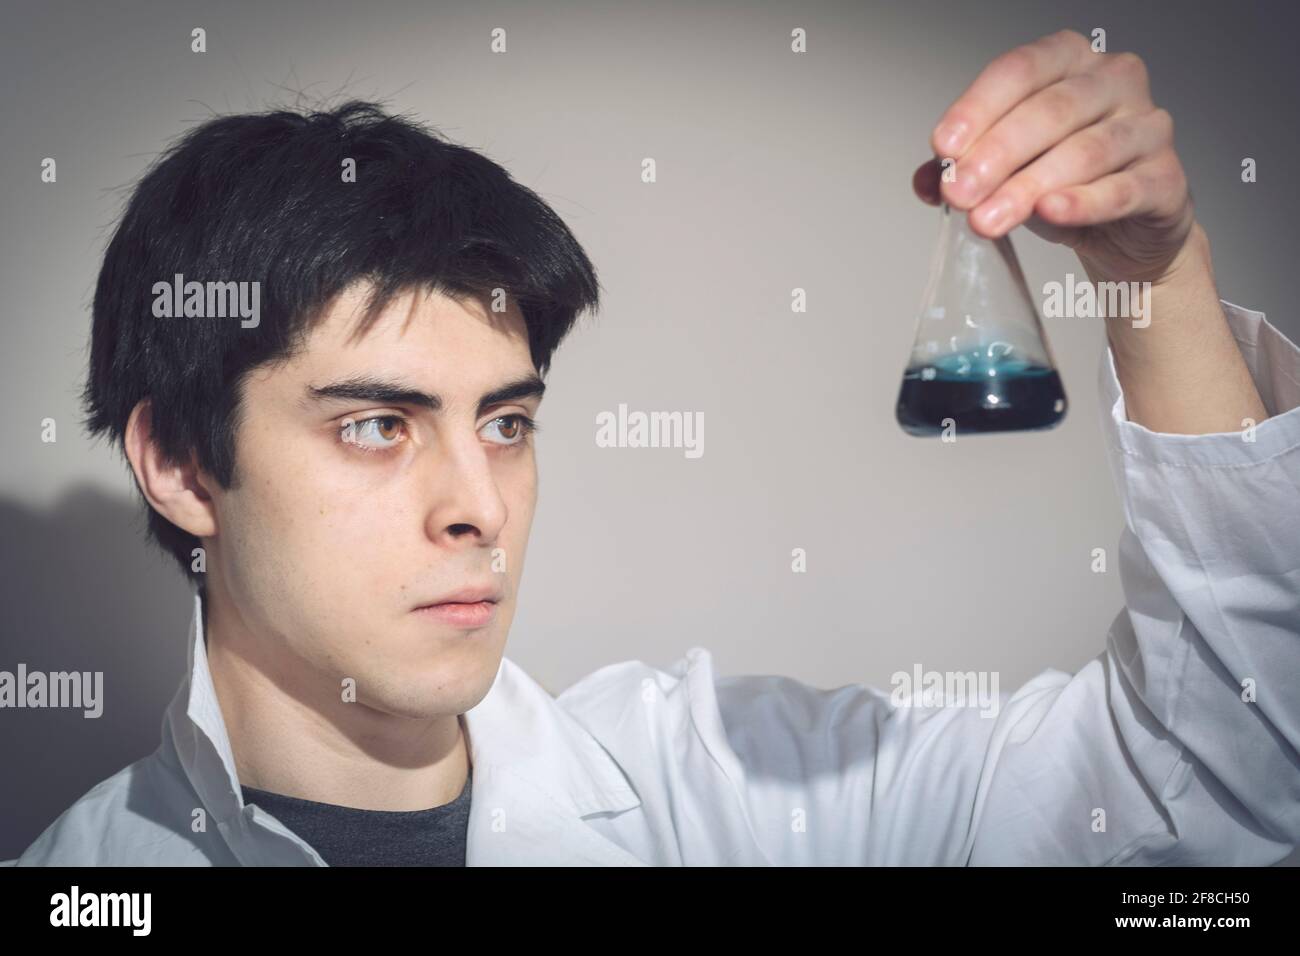 Jeune homme caucasien d'apparence hispanique dans un manteau de laboratoire examinant un échantillon dans une fiole conique, lycée, université, chimie Banque D'Images